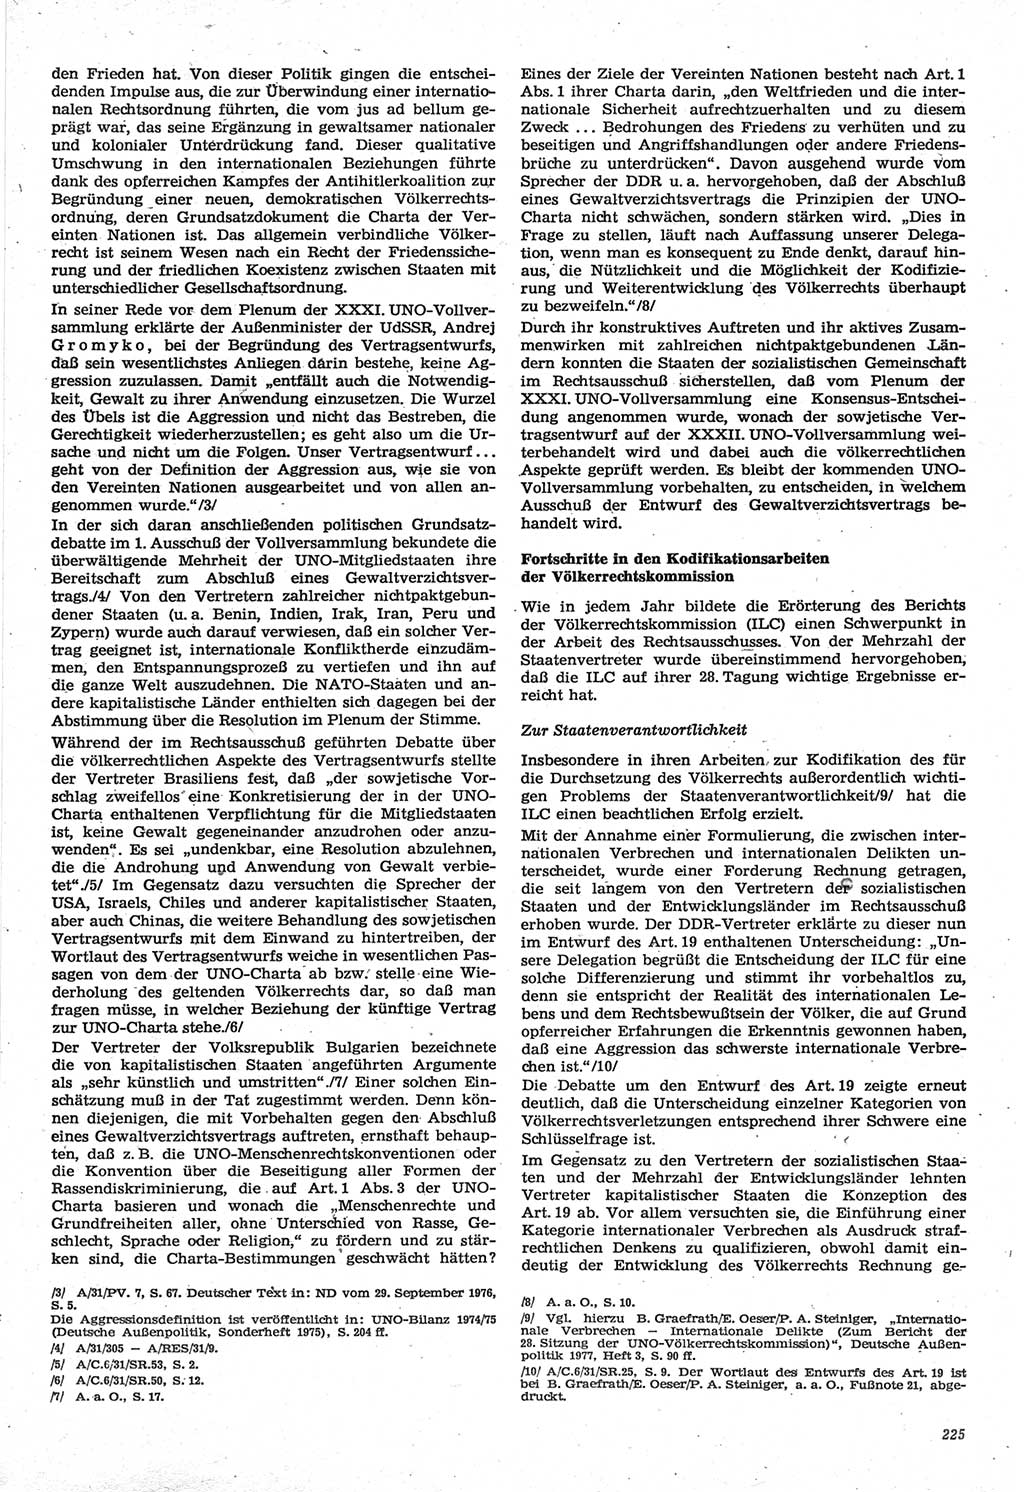 Neue Justiz (NJ), Zeitschrift für Recht und Rechtswissenschaft-Zeitschrift, sozialistisches Recht und Gesetzlichkeit, 31. Jahrgang 1977, Seite 225 (NJ DDR 1977, S. 225)